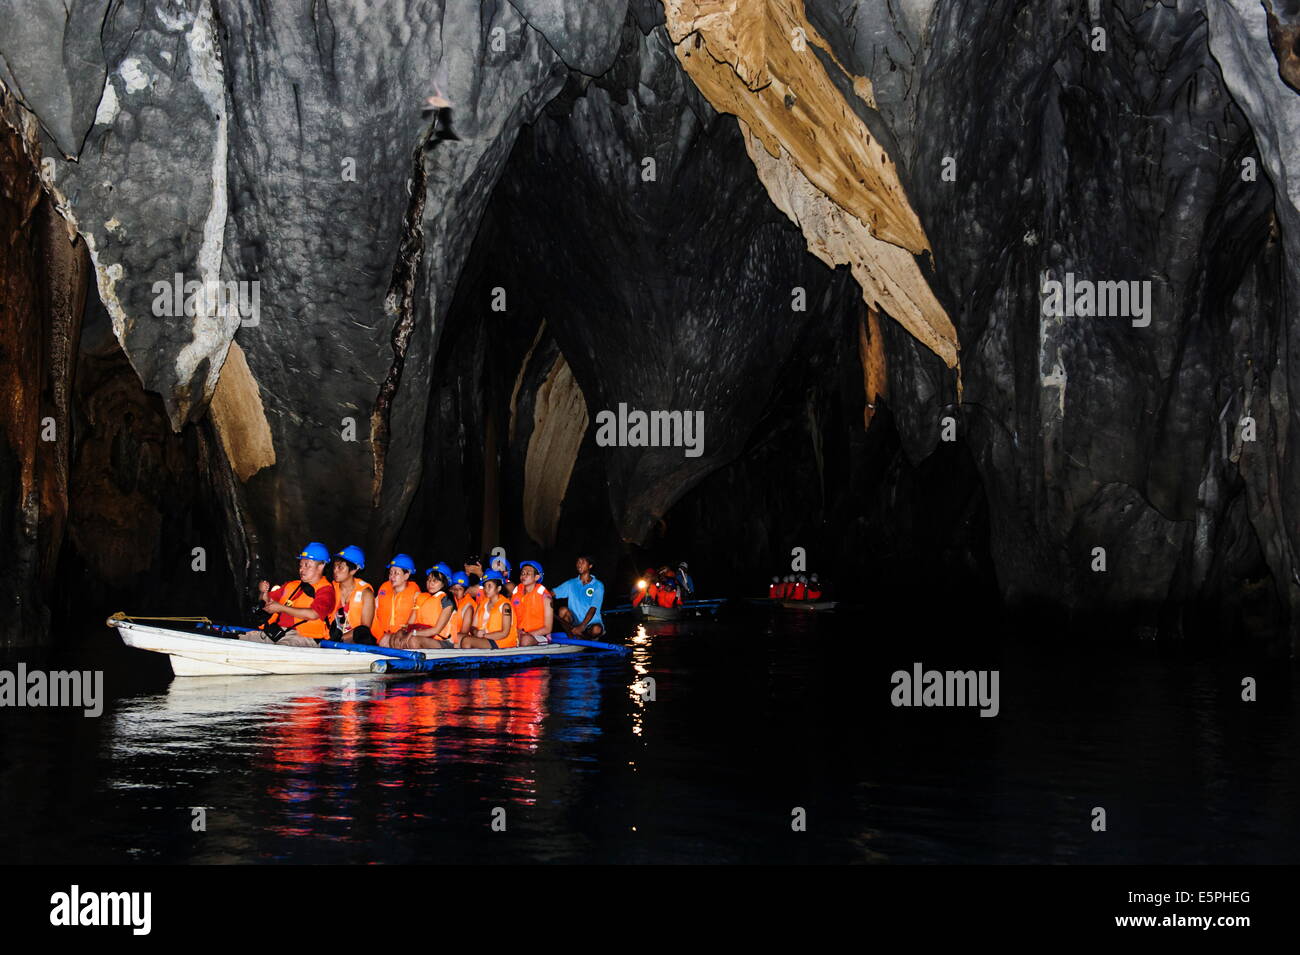 Los turistas en un bote de remos entrando en el río subterráneo, el Parque Nacional Río Puerto-Princesa, sitio UNESCO, Filipinas Foto de stock